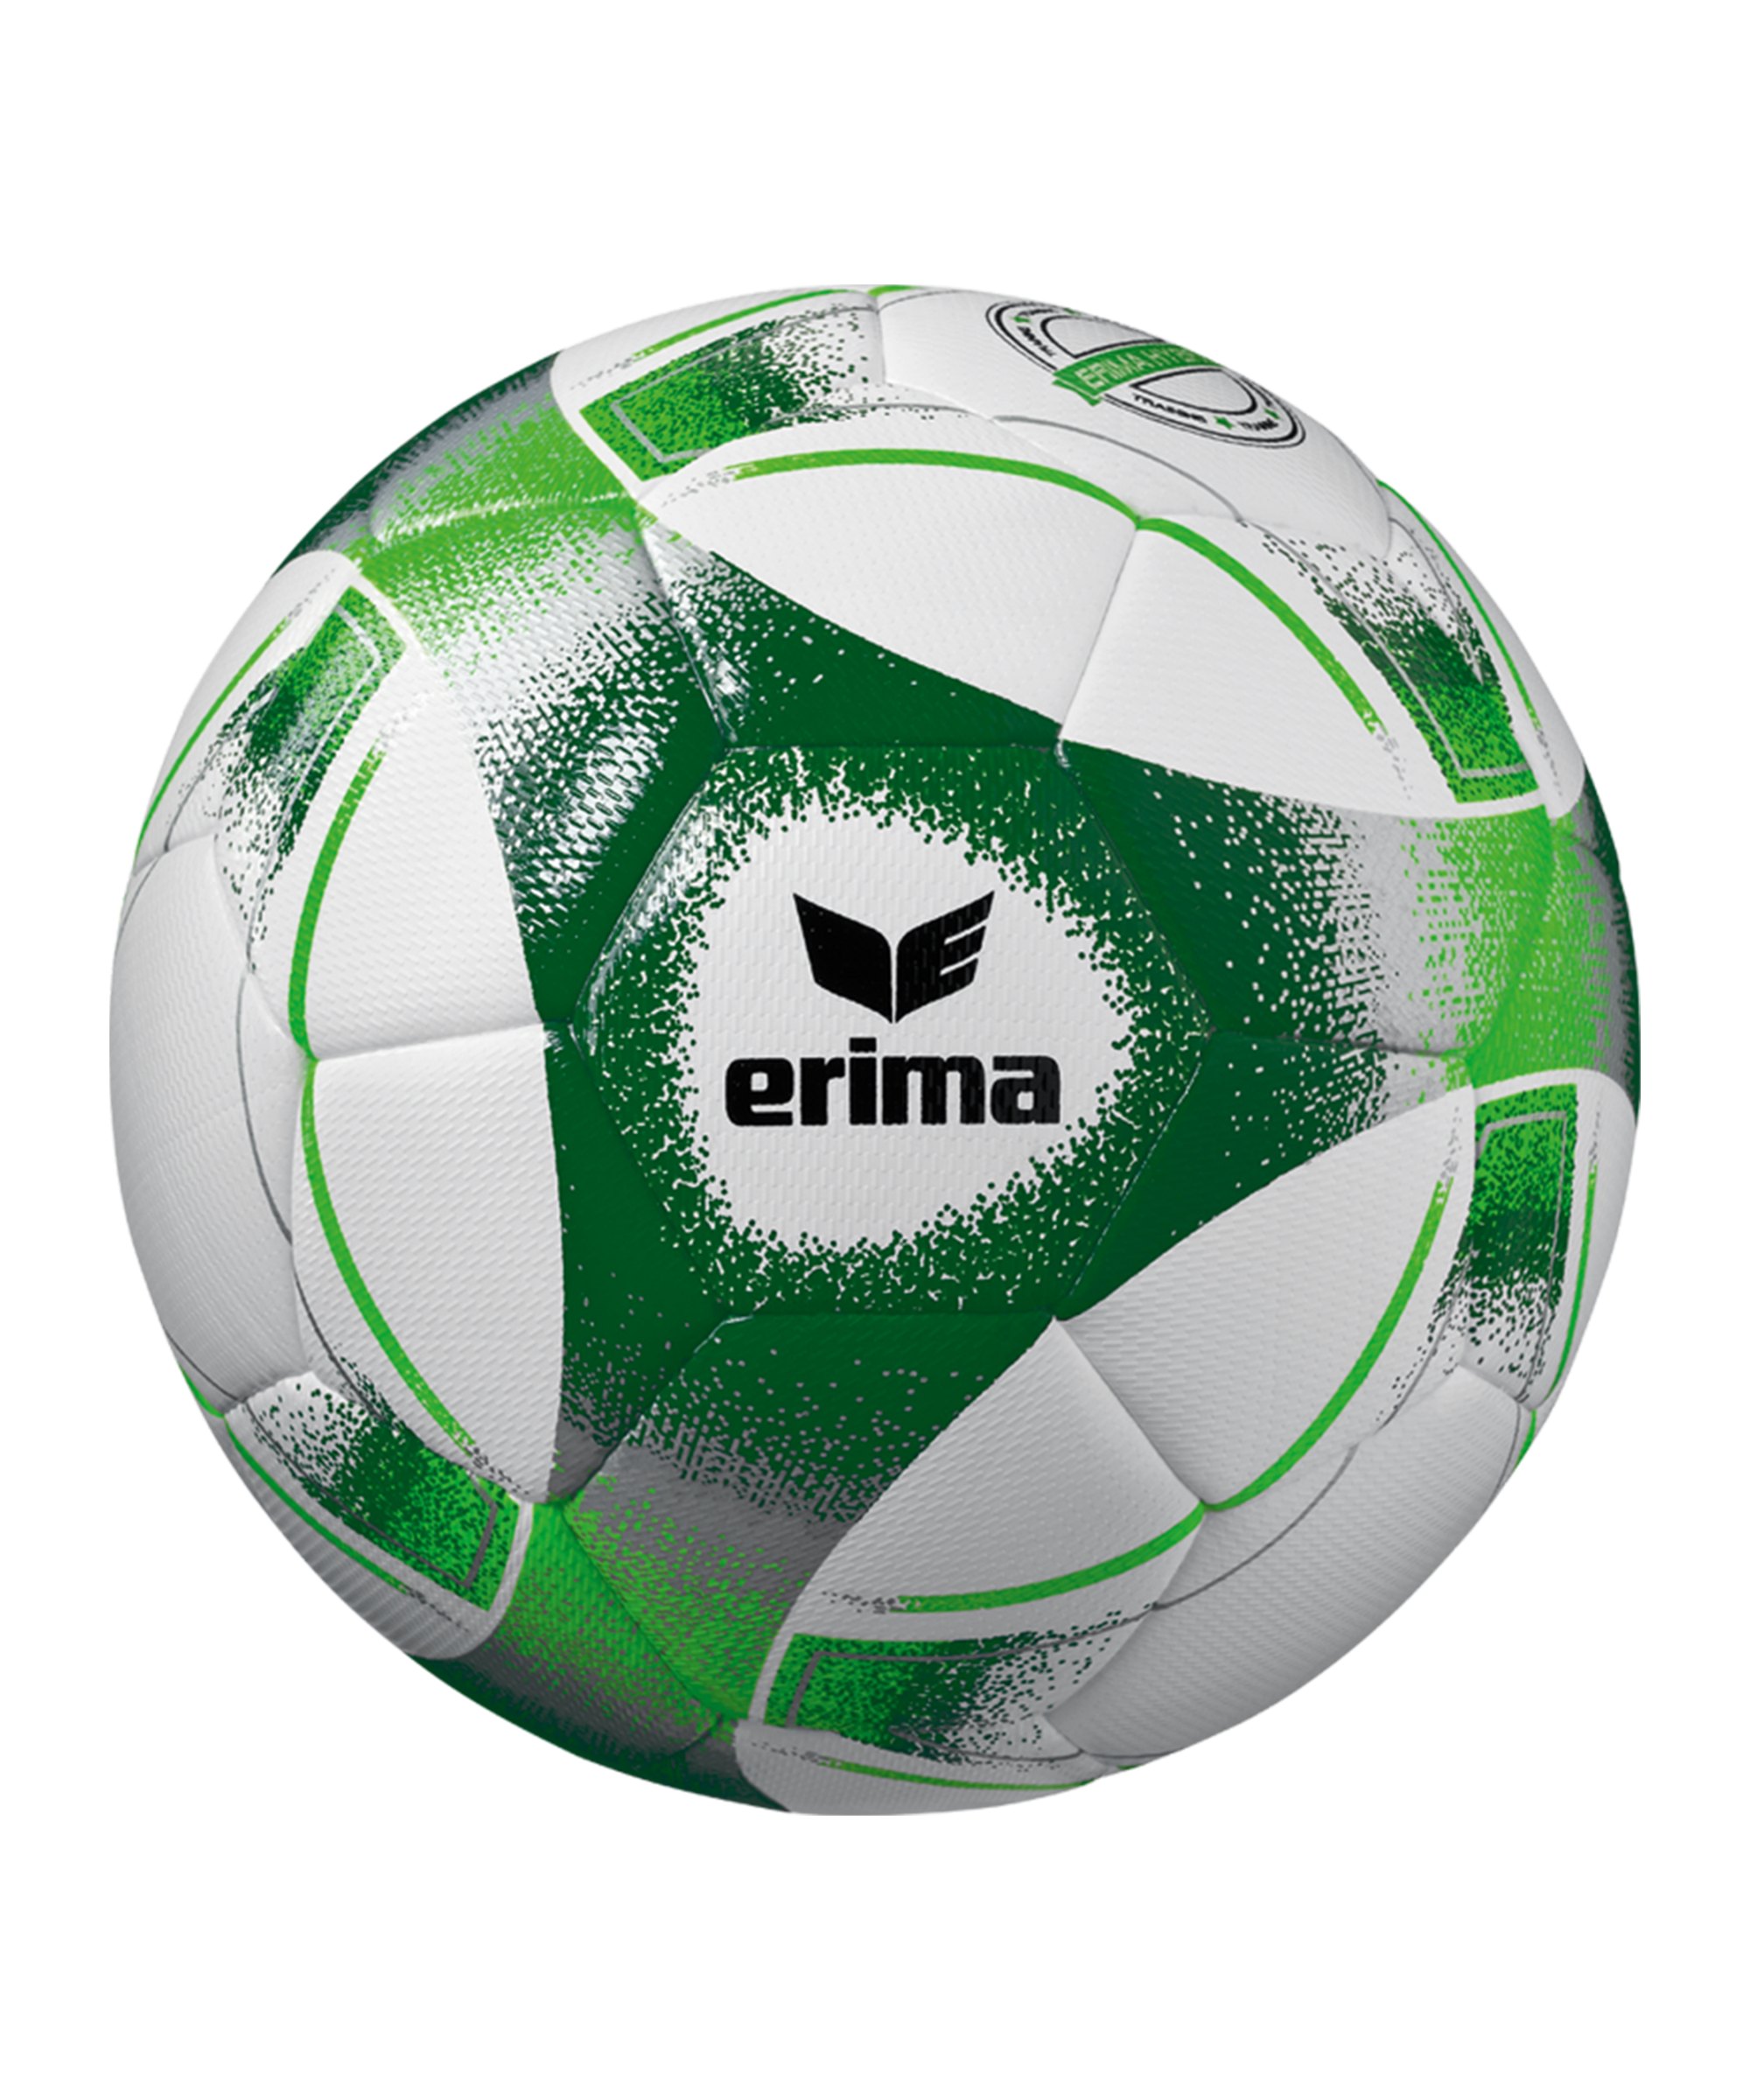 Erima Hybrid 2.0 Trainingsball Grün - gruen